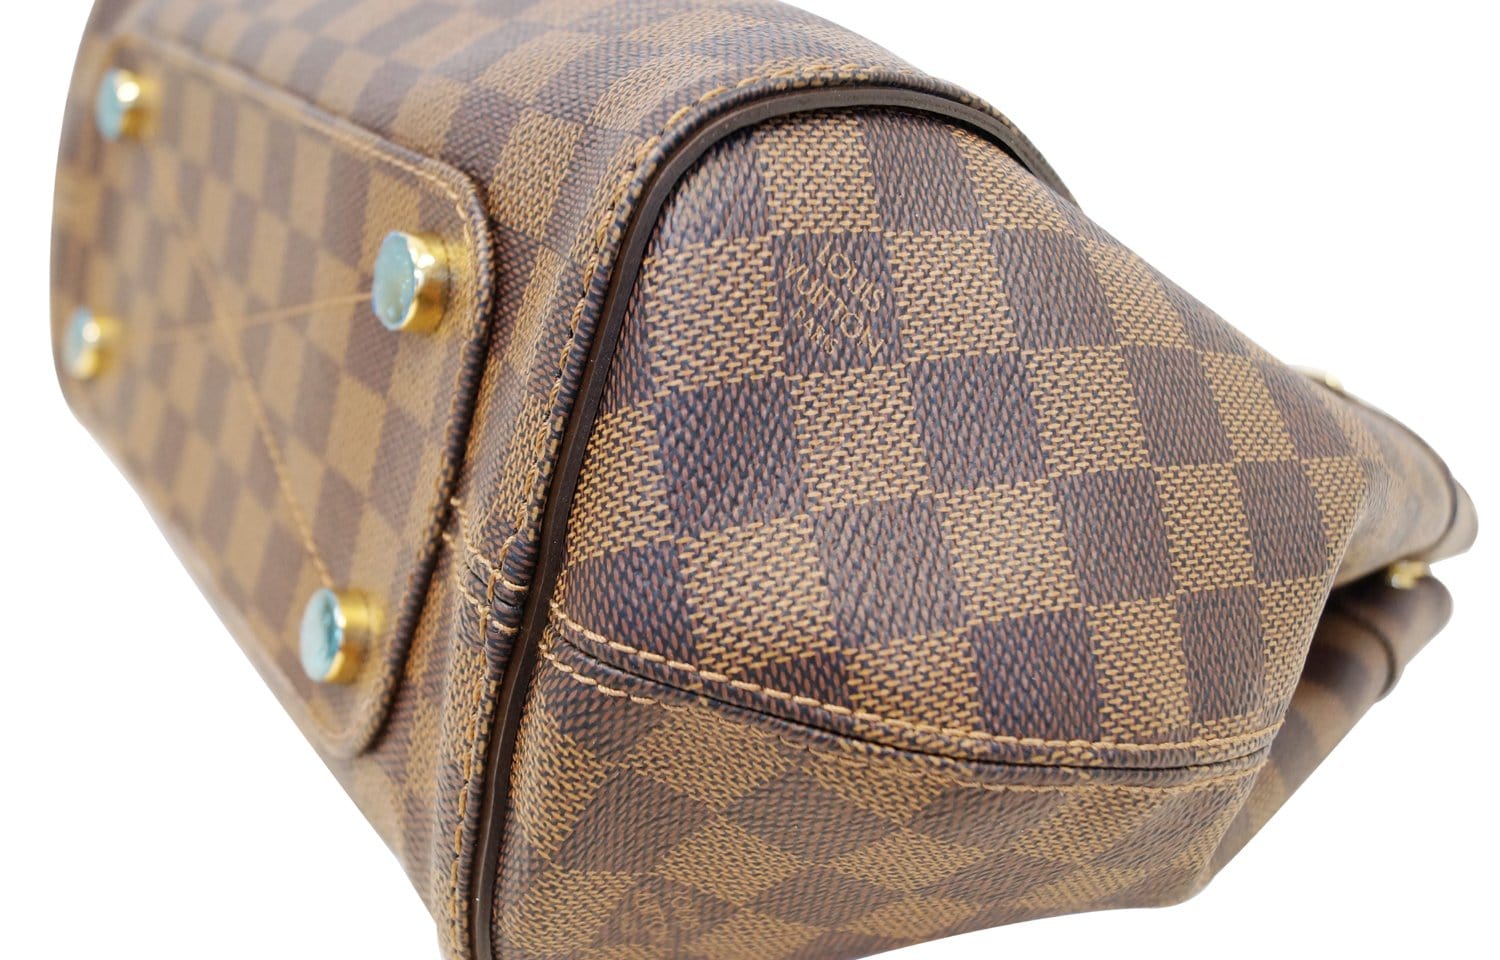 Authentic Louis Vuitton Damier Ebene Iena MM Shoulder Tote Bag – Paris  Station Shop